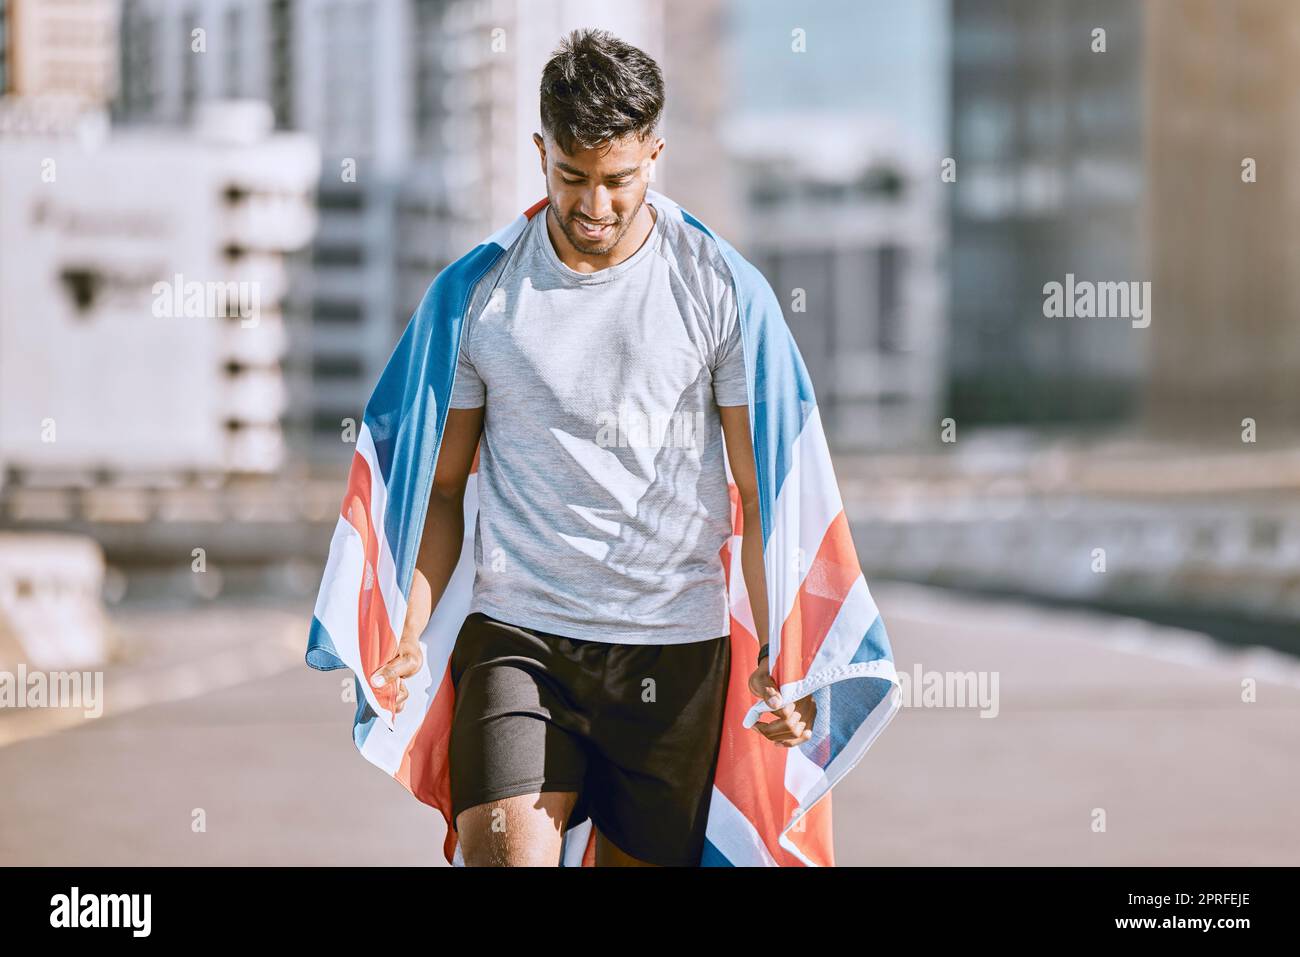 Fitness, entrenamiento y entrenamiento con un hombre deportivo en una bandera británica corriendo un maratón en la ciudad. Salud, ejercicio y bienestar con un atleta olímpico o corredor que hace ejercicio cardiovascular y de resistencia Foto de stock